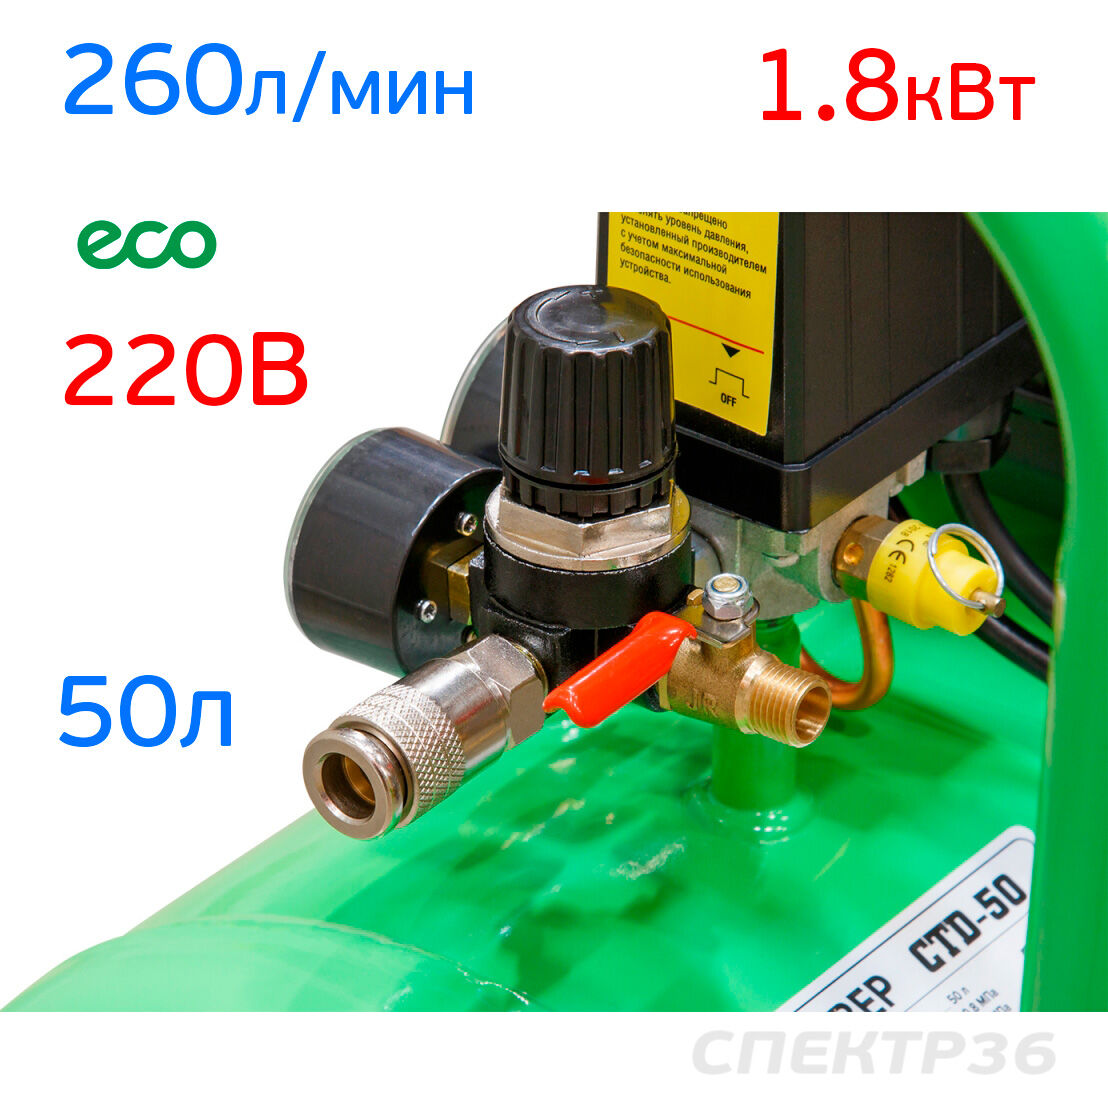 Компрессор ECO (220В, 260л/мин, 50л) прямой привод 4